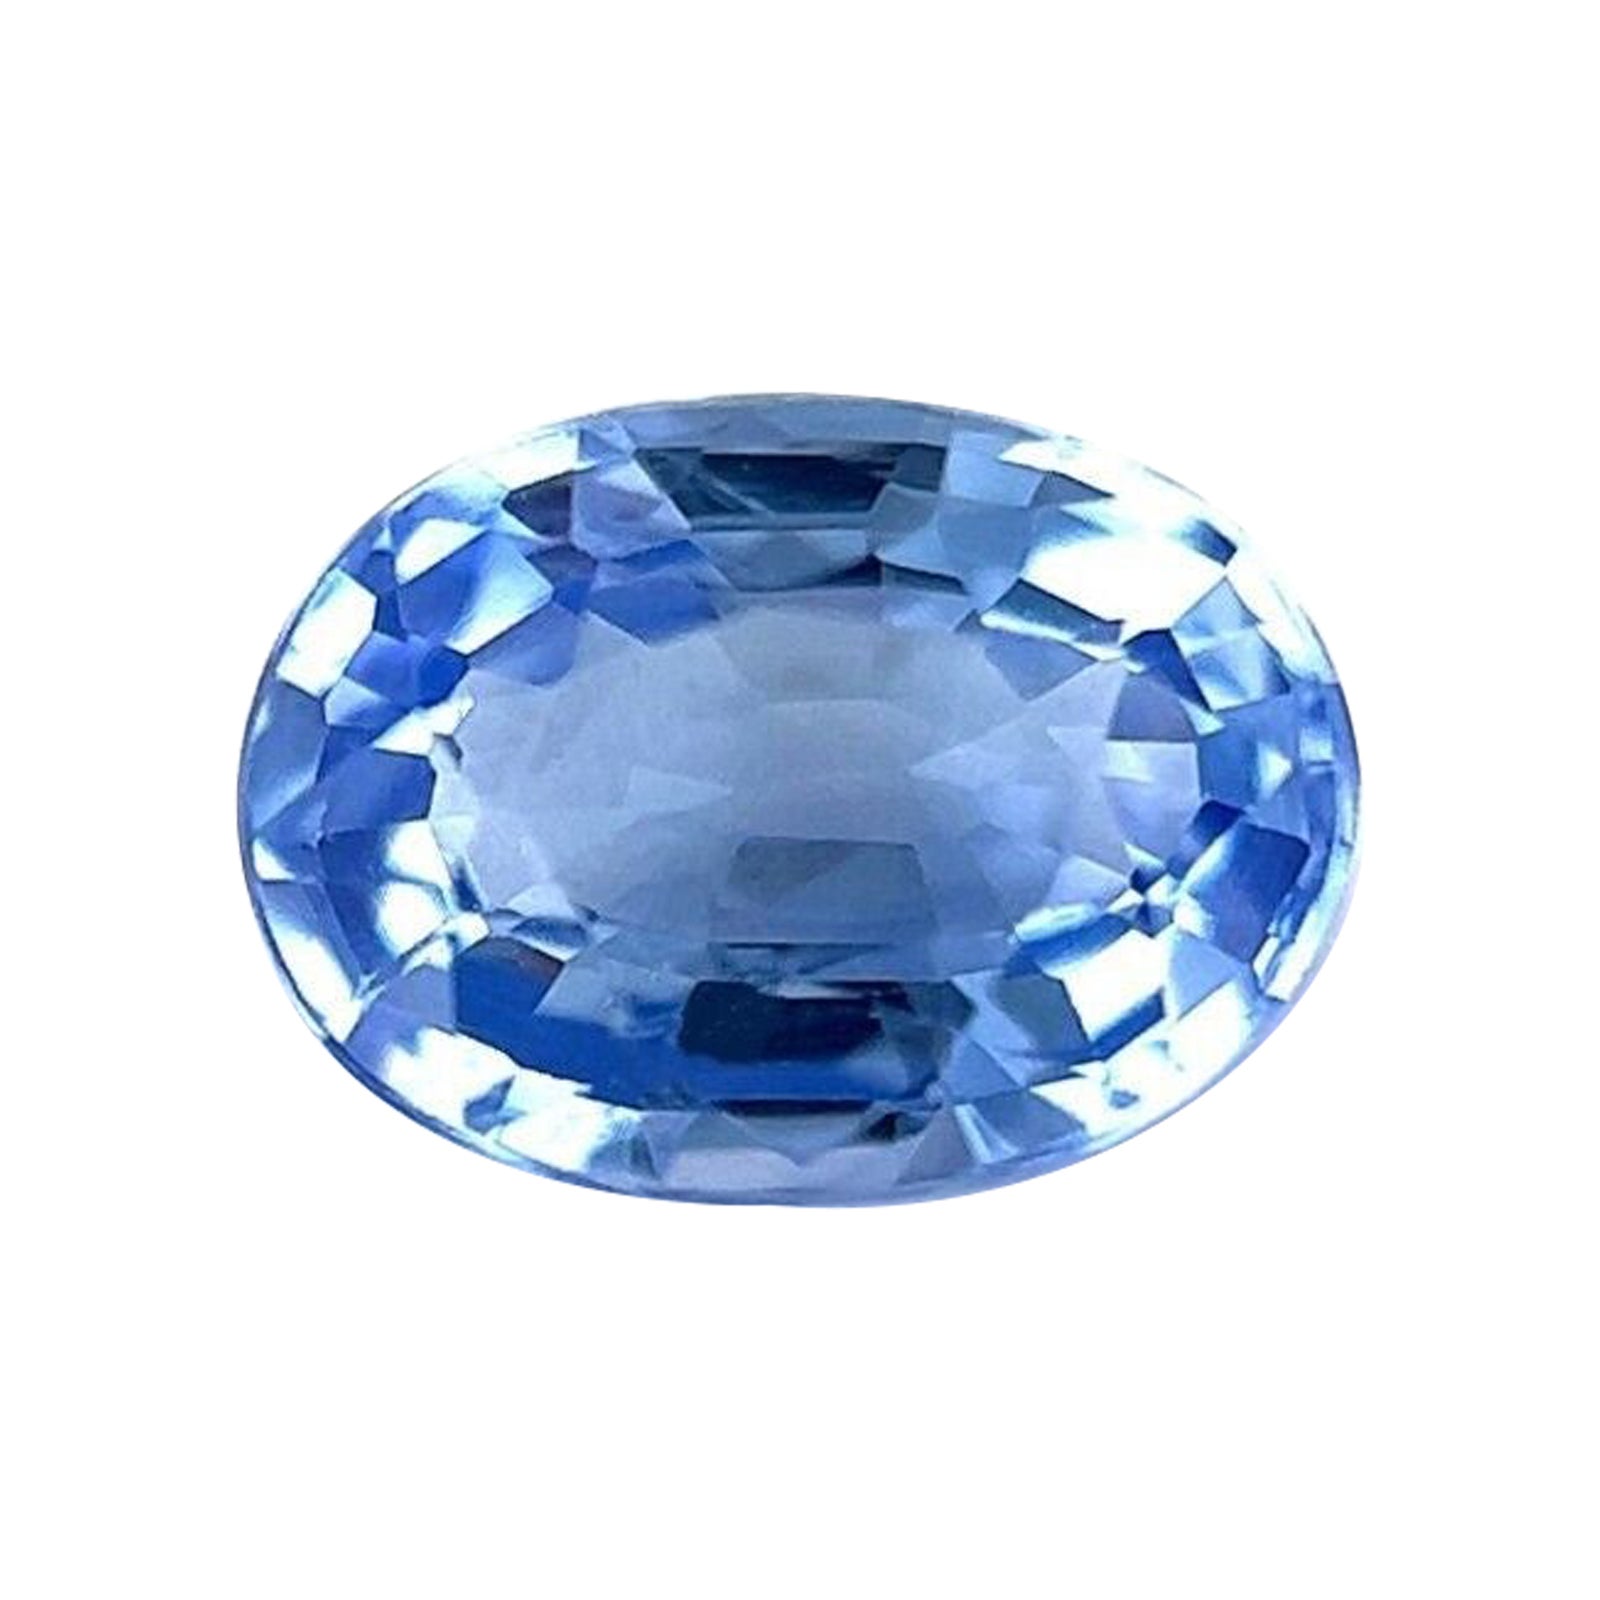 Fine pierre précieuse non sertie de Ceylan, saphir bleu de 0,85 carat, taille ovale, rare